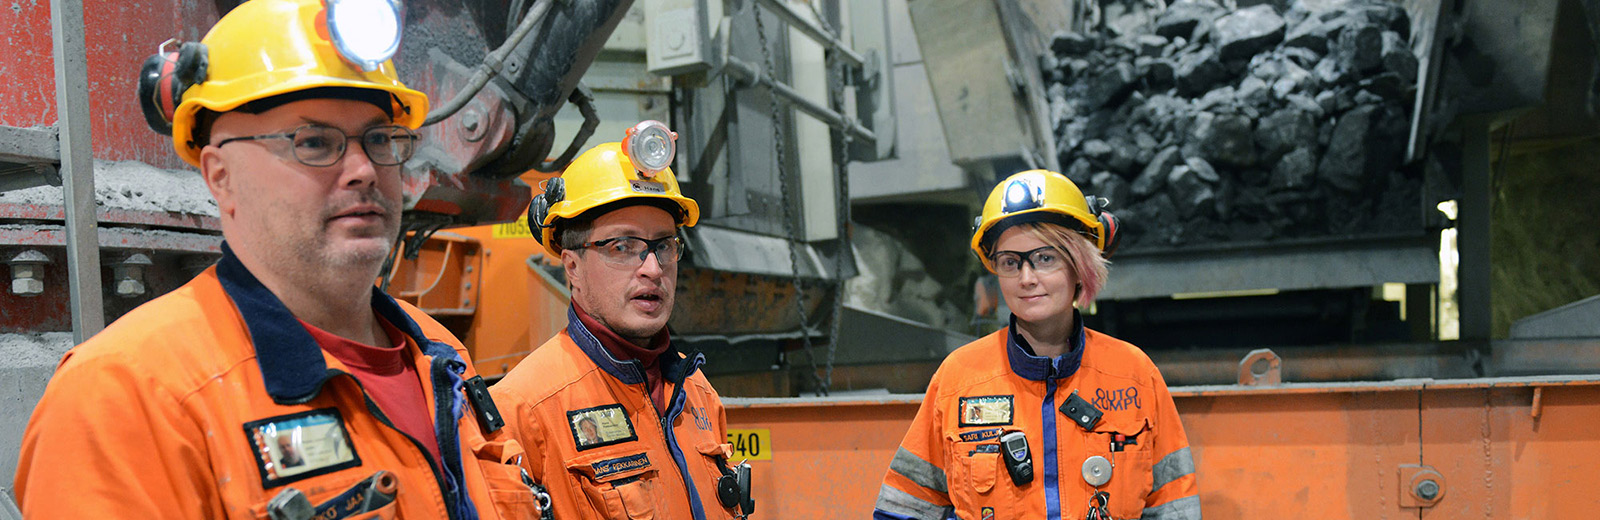 Kemin kaivoksen murskaustiimiin kuuluvat asentajat Marko Jaako (vas.), Hans Pekkarinen ja Sari Kulju huolehtivat esimurskauspiirin toiminnasta.